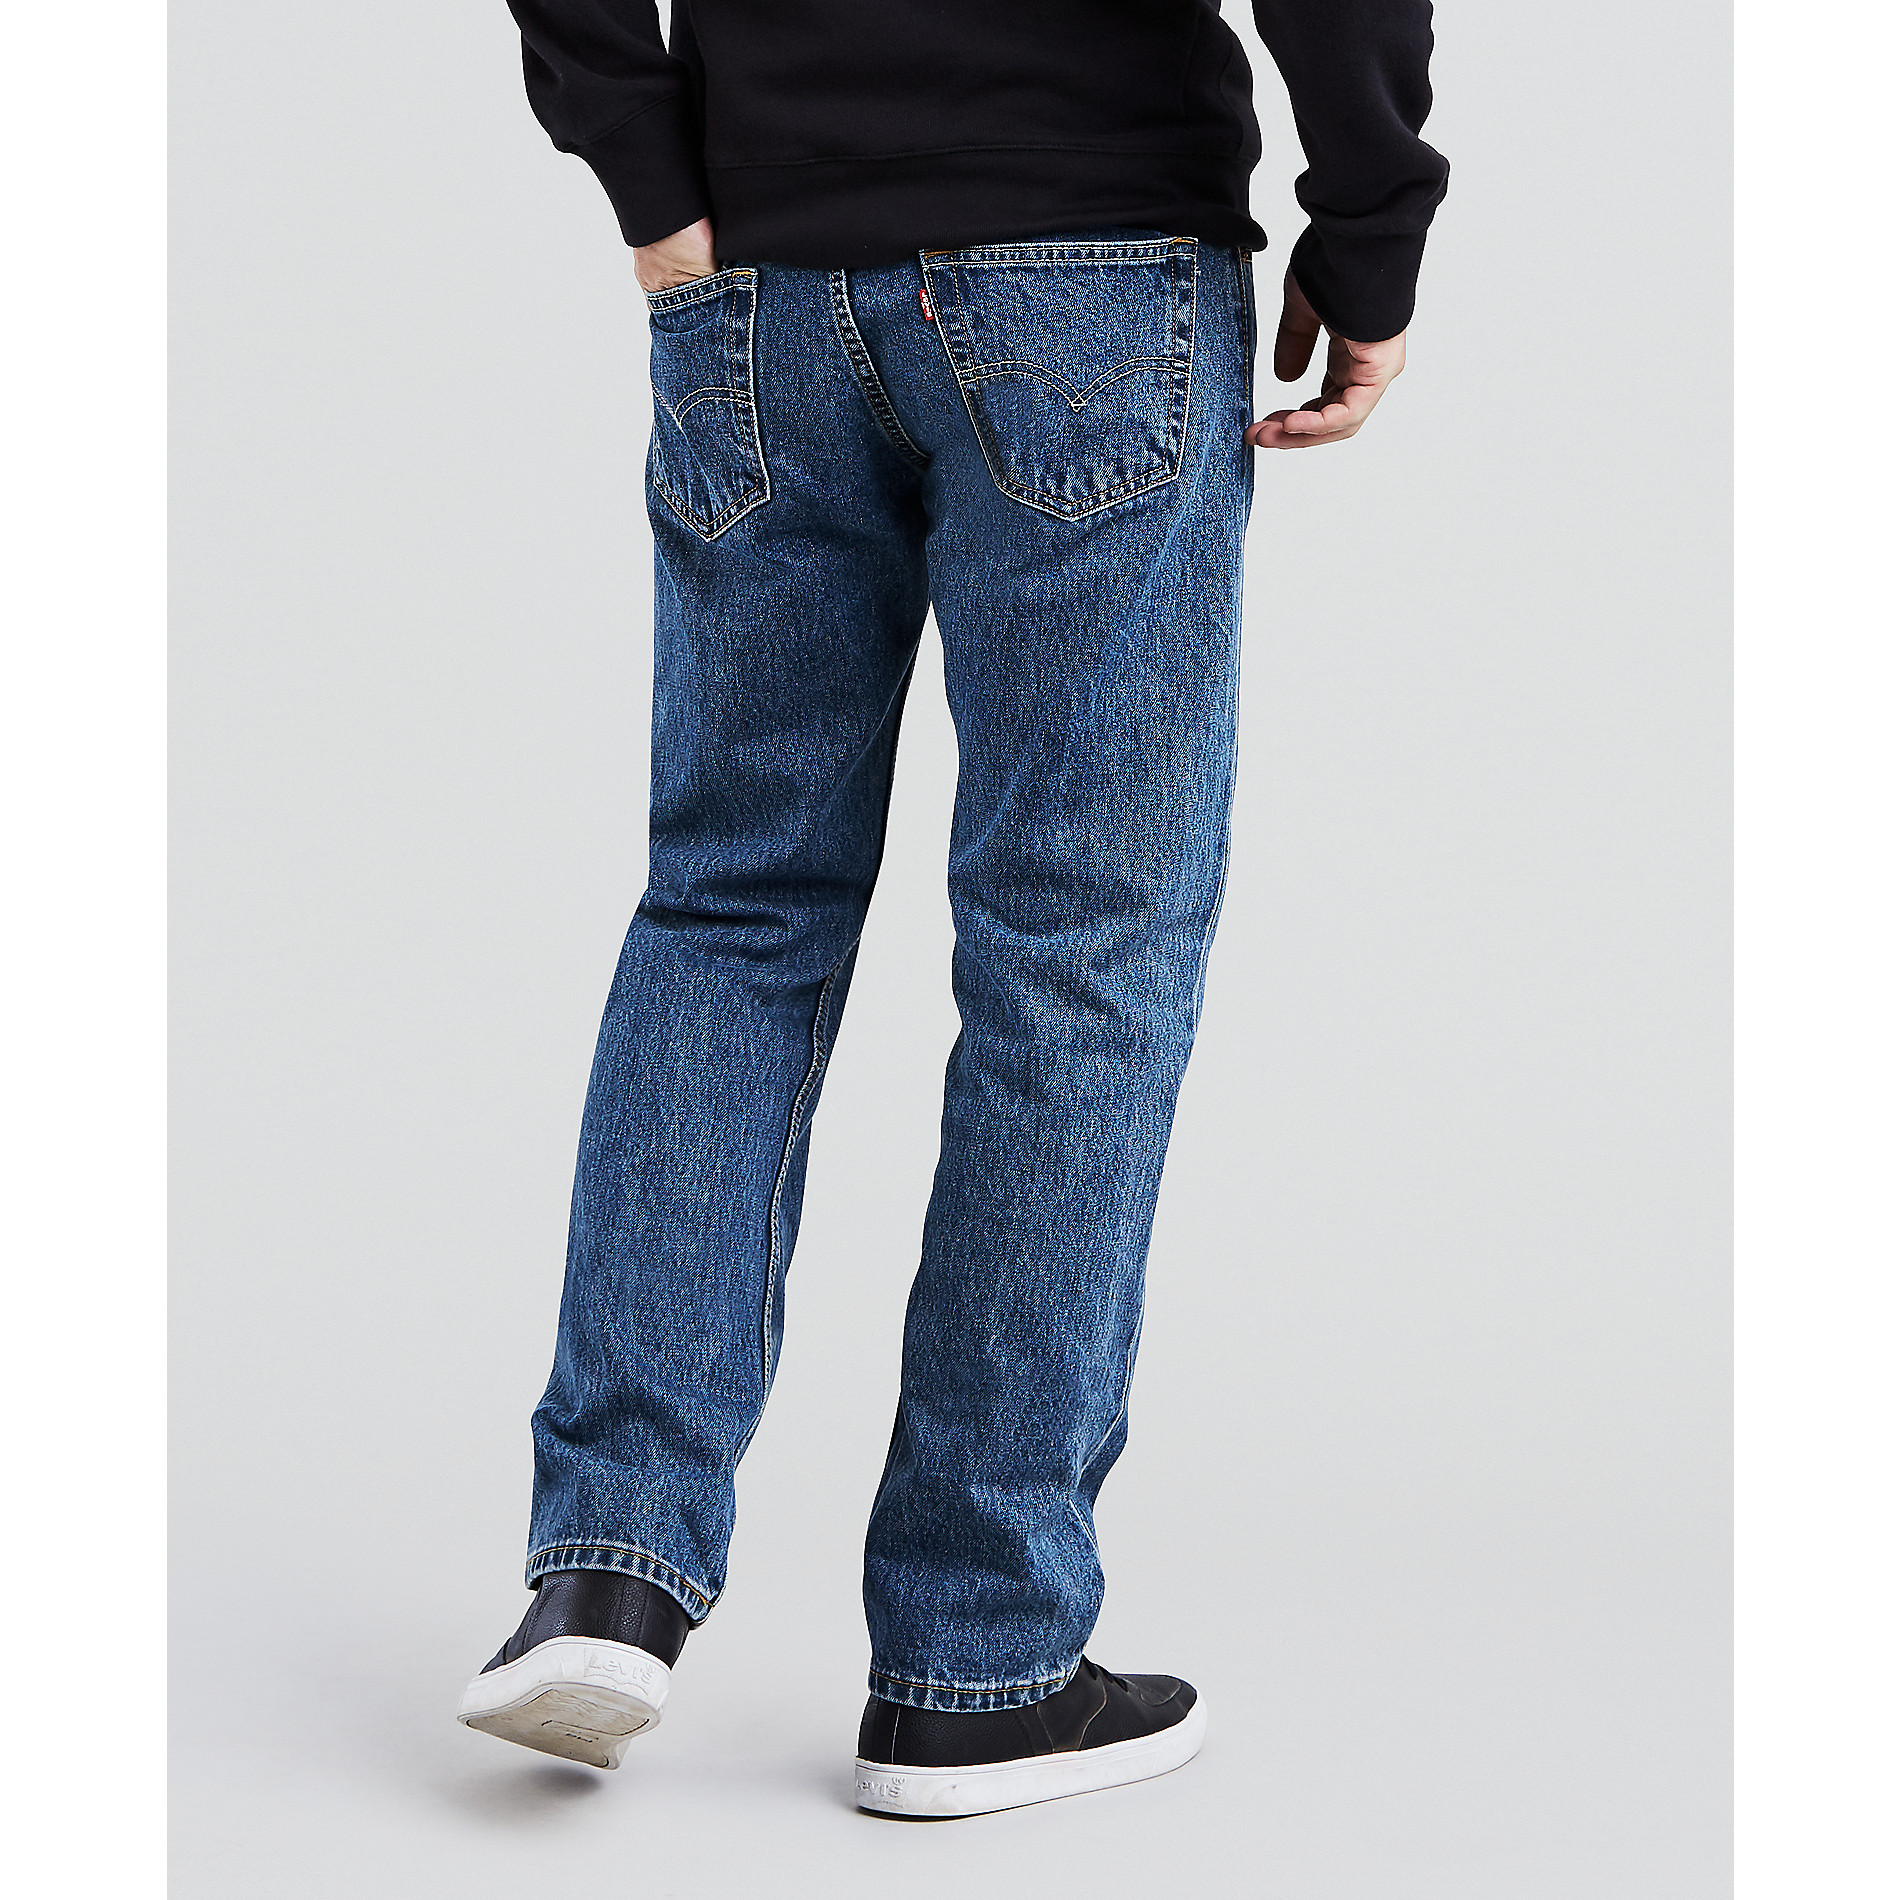 levi's 505 regular fit jeans sale